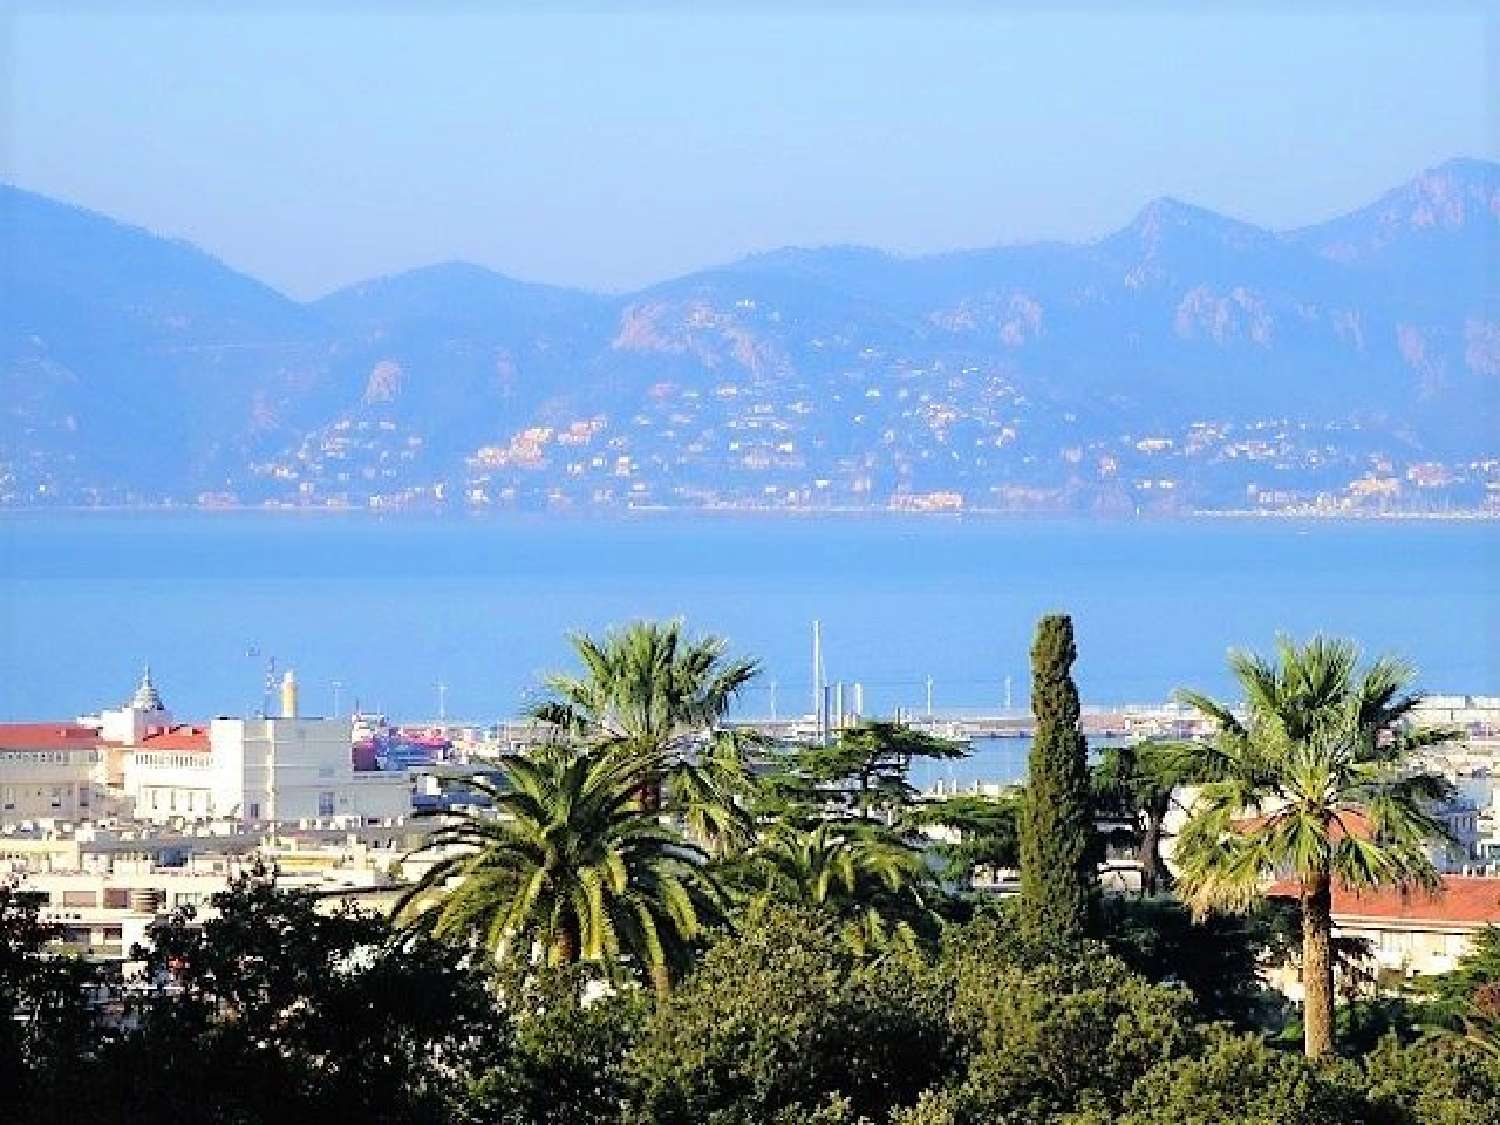  for sale villa Cannes Alpes-Maritimes 1